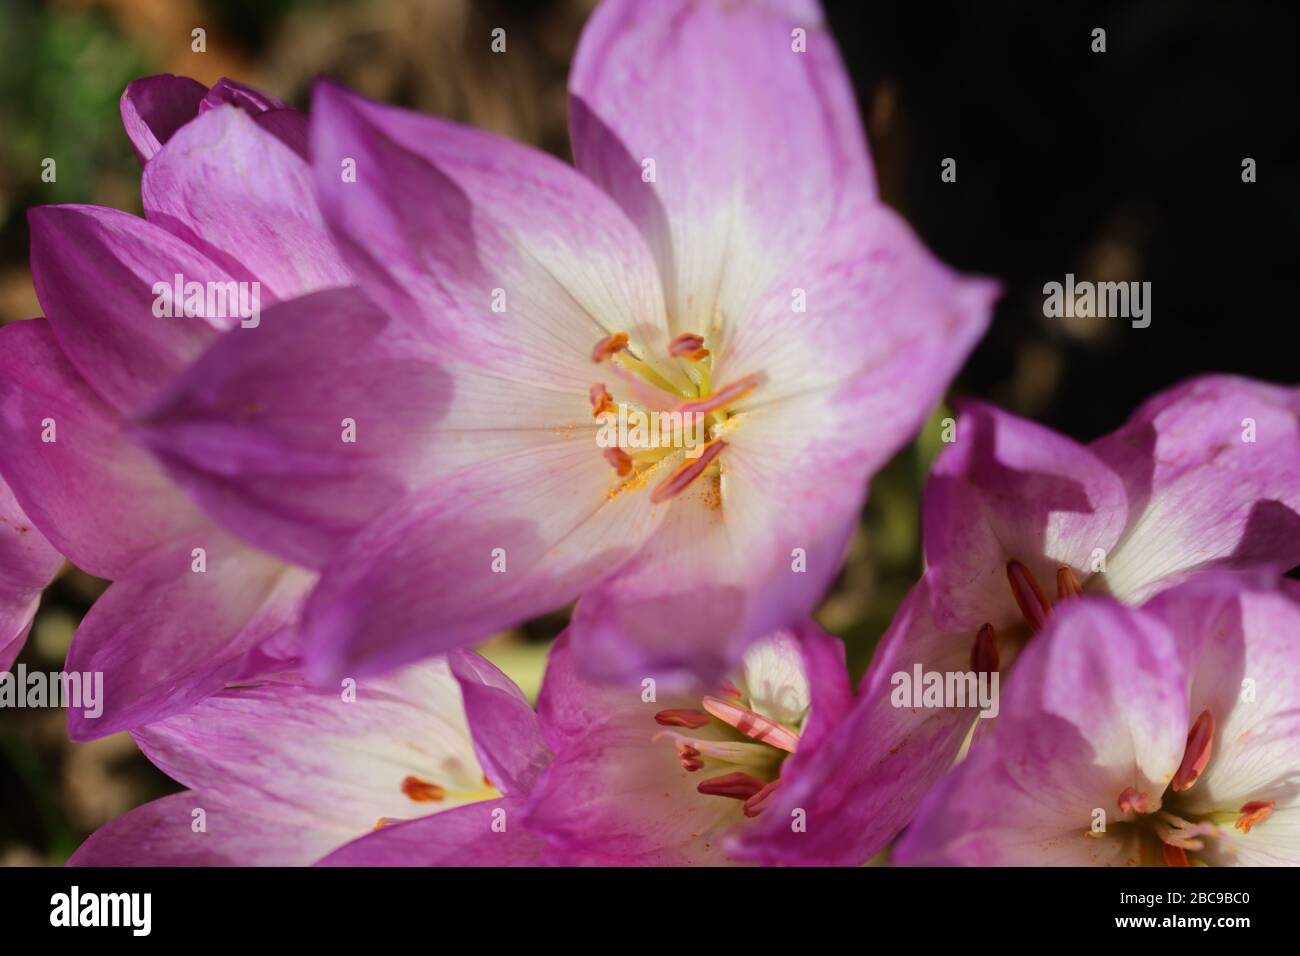 Crocus (pluriel anglais : crocuses ou croci) est un genre de plantes à fleurs de la famille de l'iris comprenant 90 espèces de plantes vivaces issues de corms. Banque D'Images